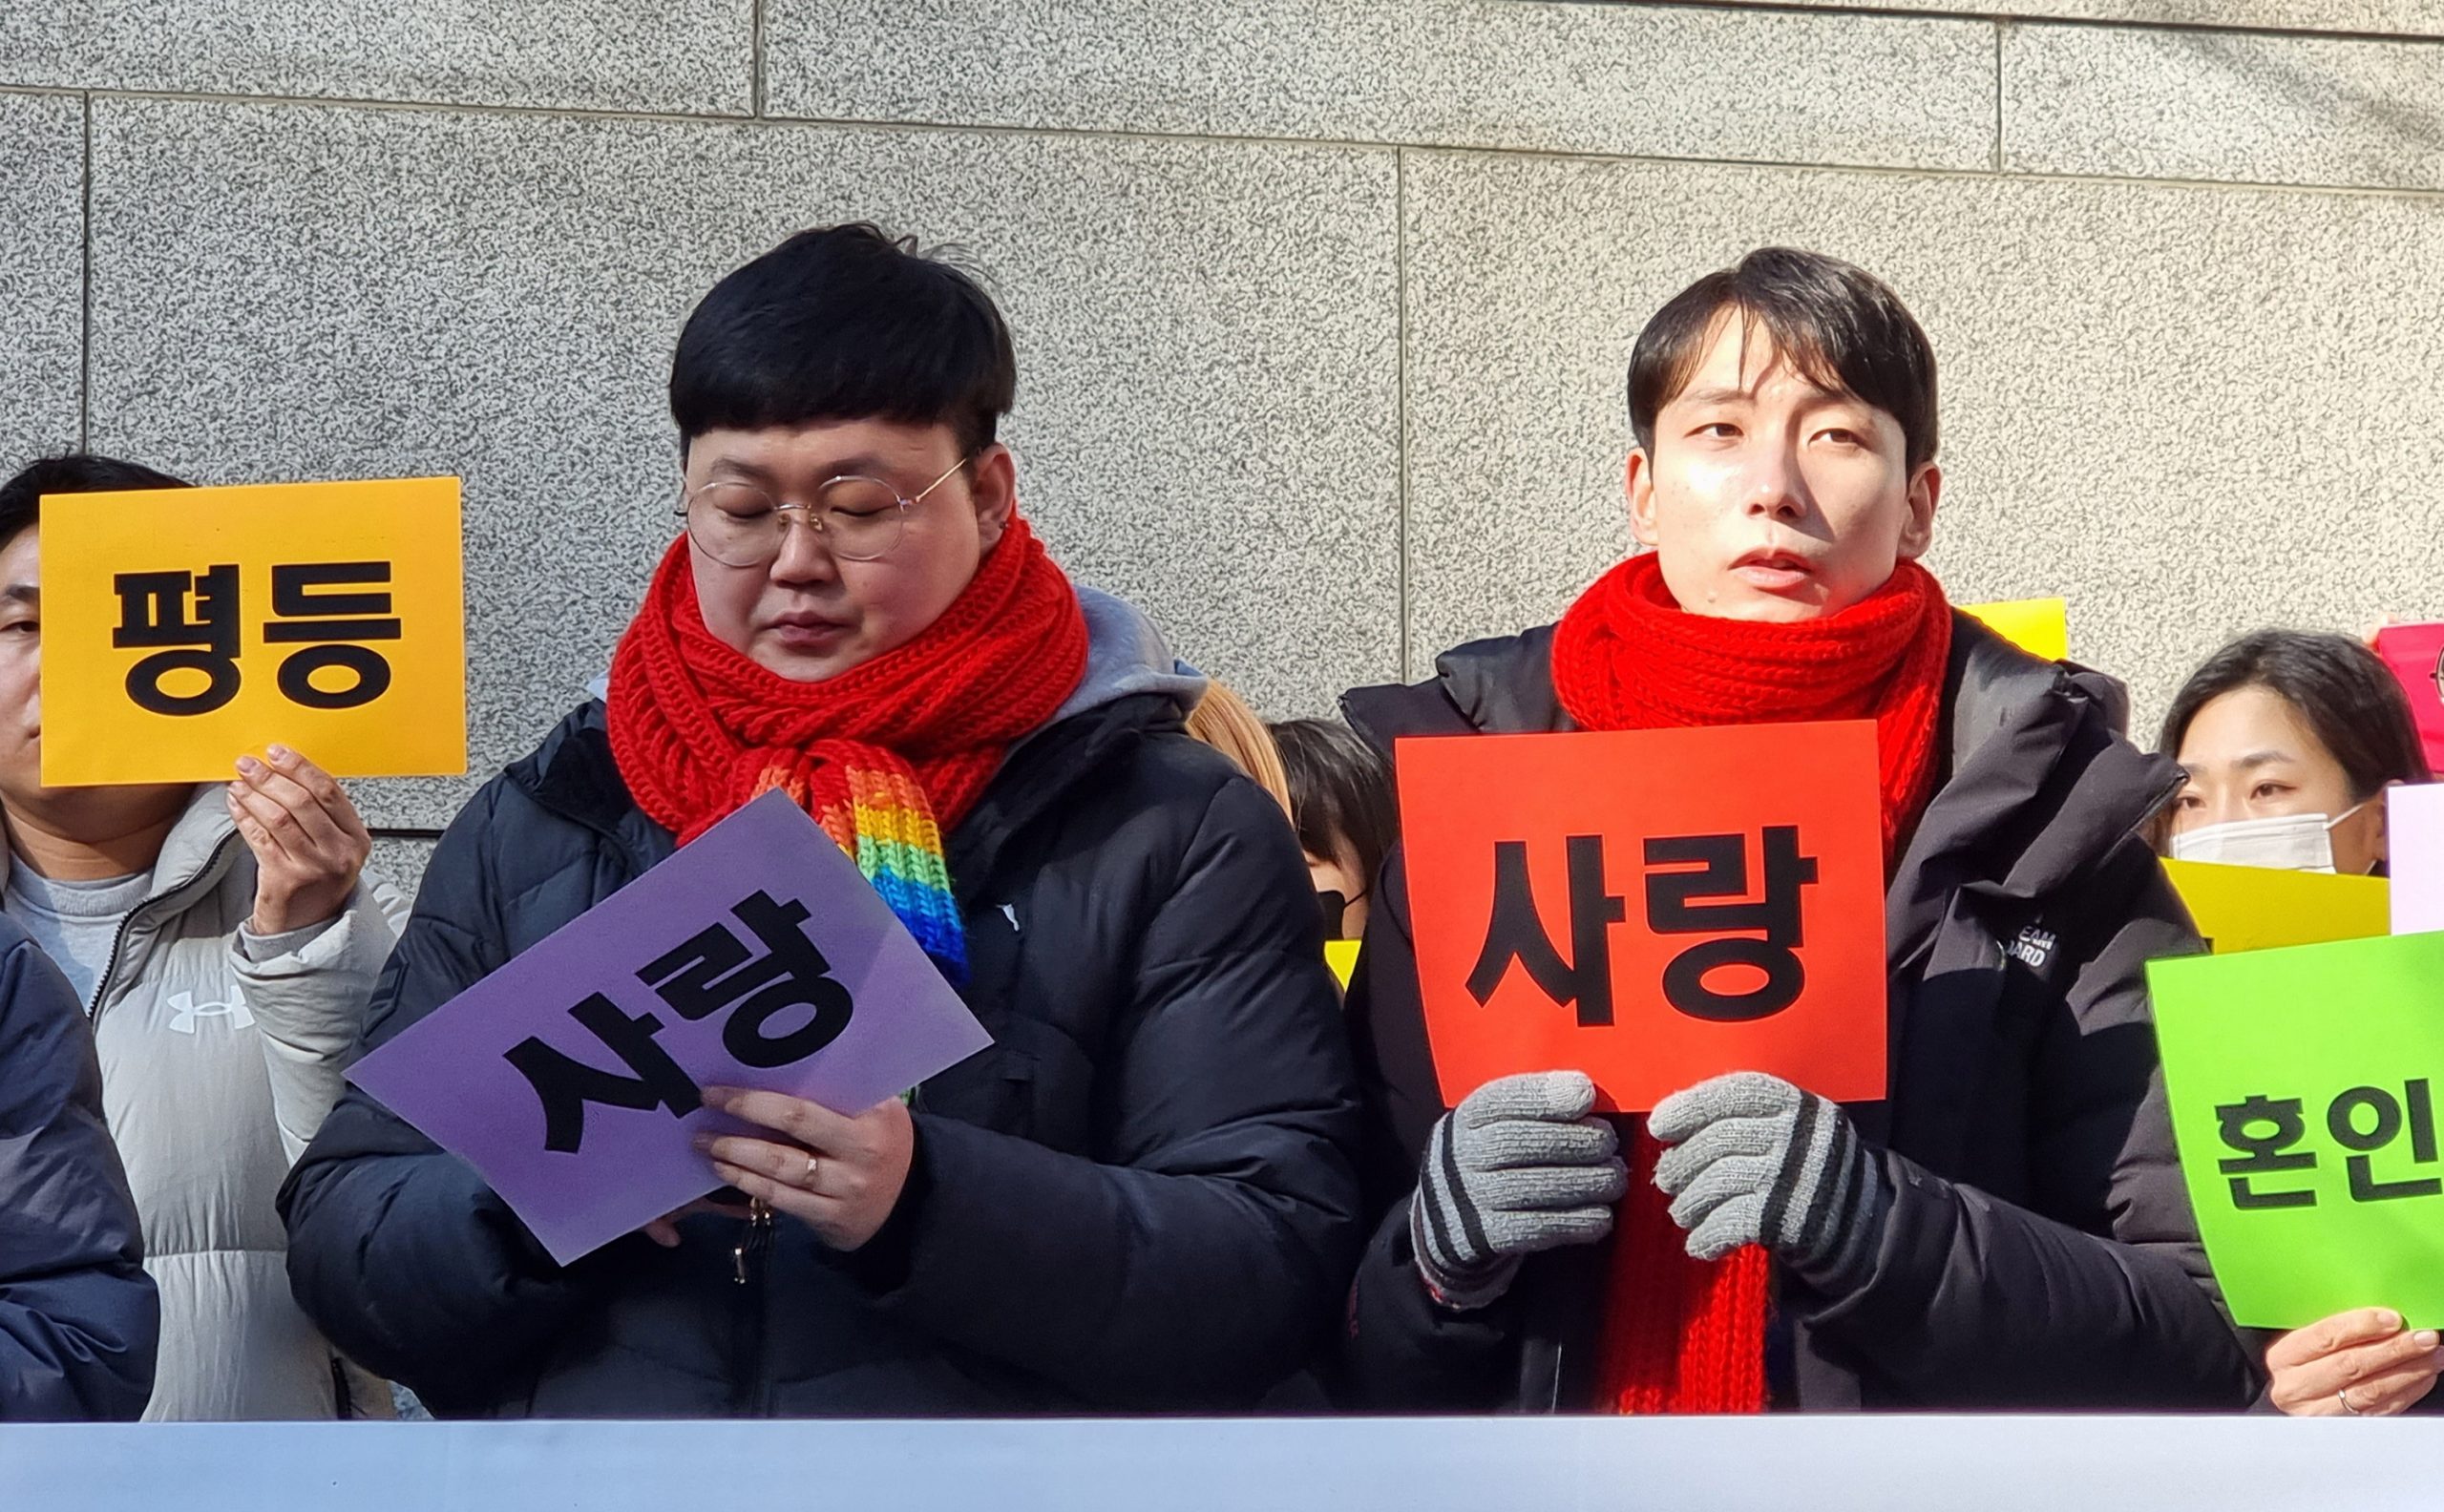 推翻初级法院裁决 韩高等法院承认同性伴侣权利